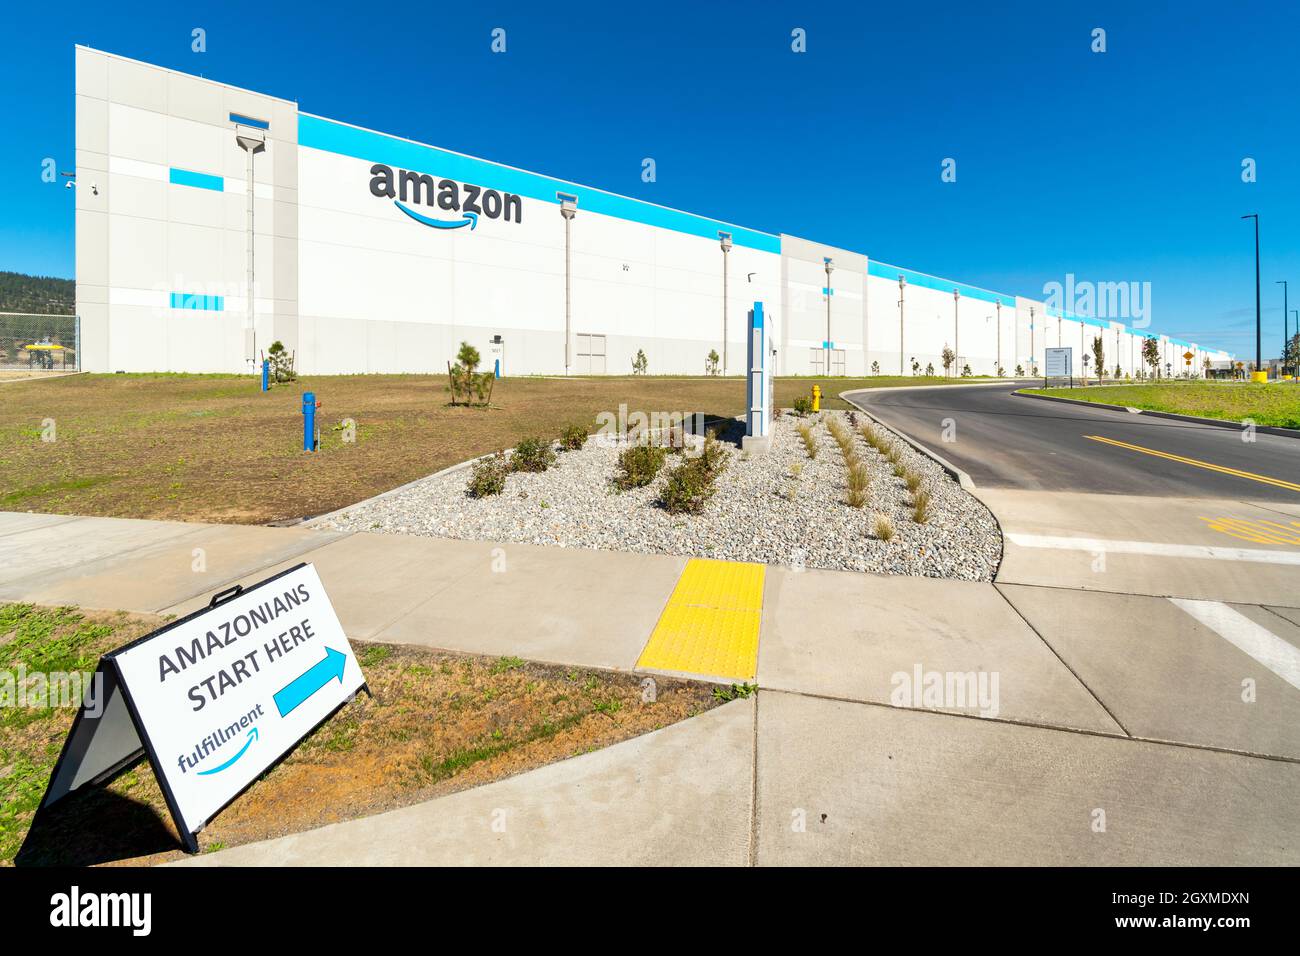 Vista general del cartel de bienvenida y del edificio del Centro logístico de Amazon en Spokane Valley Washington, EE.UU., el 4 2021 de octubre. Foto de stock